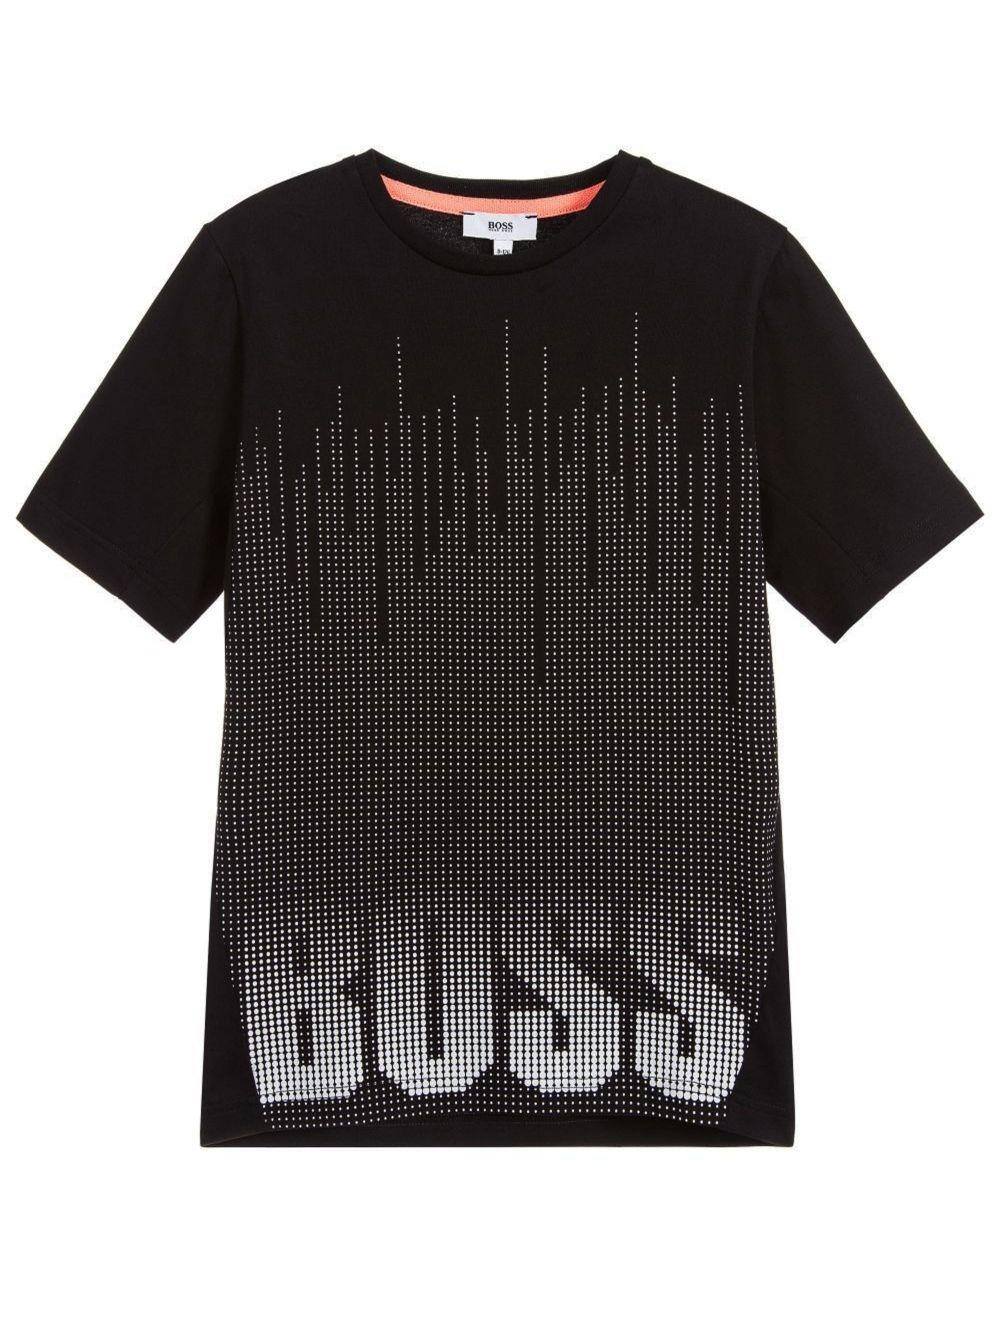 Black Dot Logo - Hugo Boss Boys Black Dot Logo T Shirt. Children's Wear